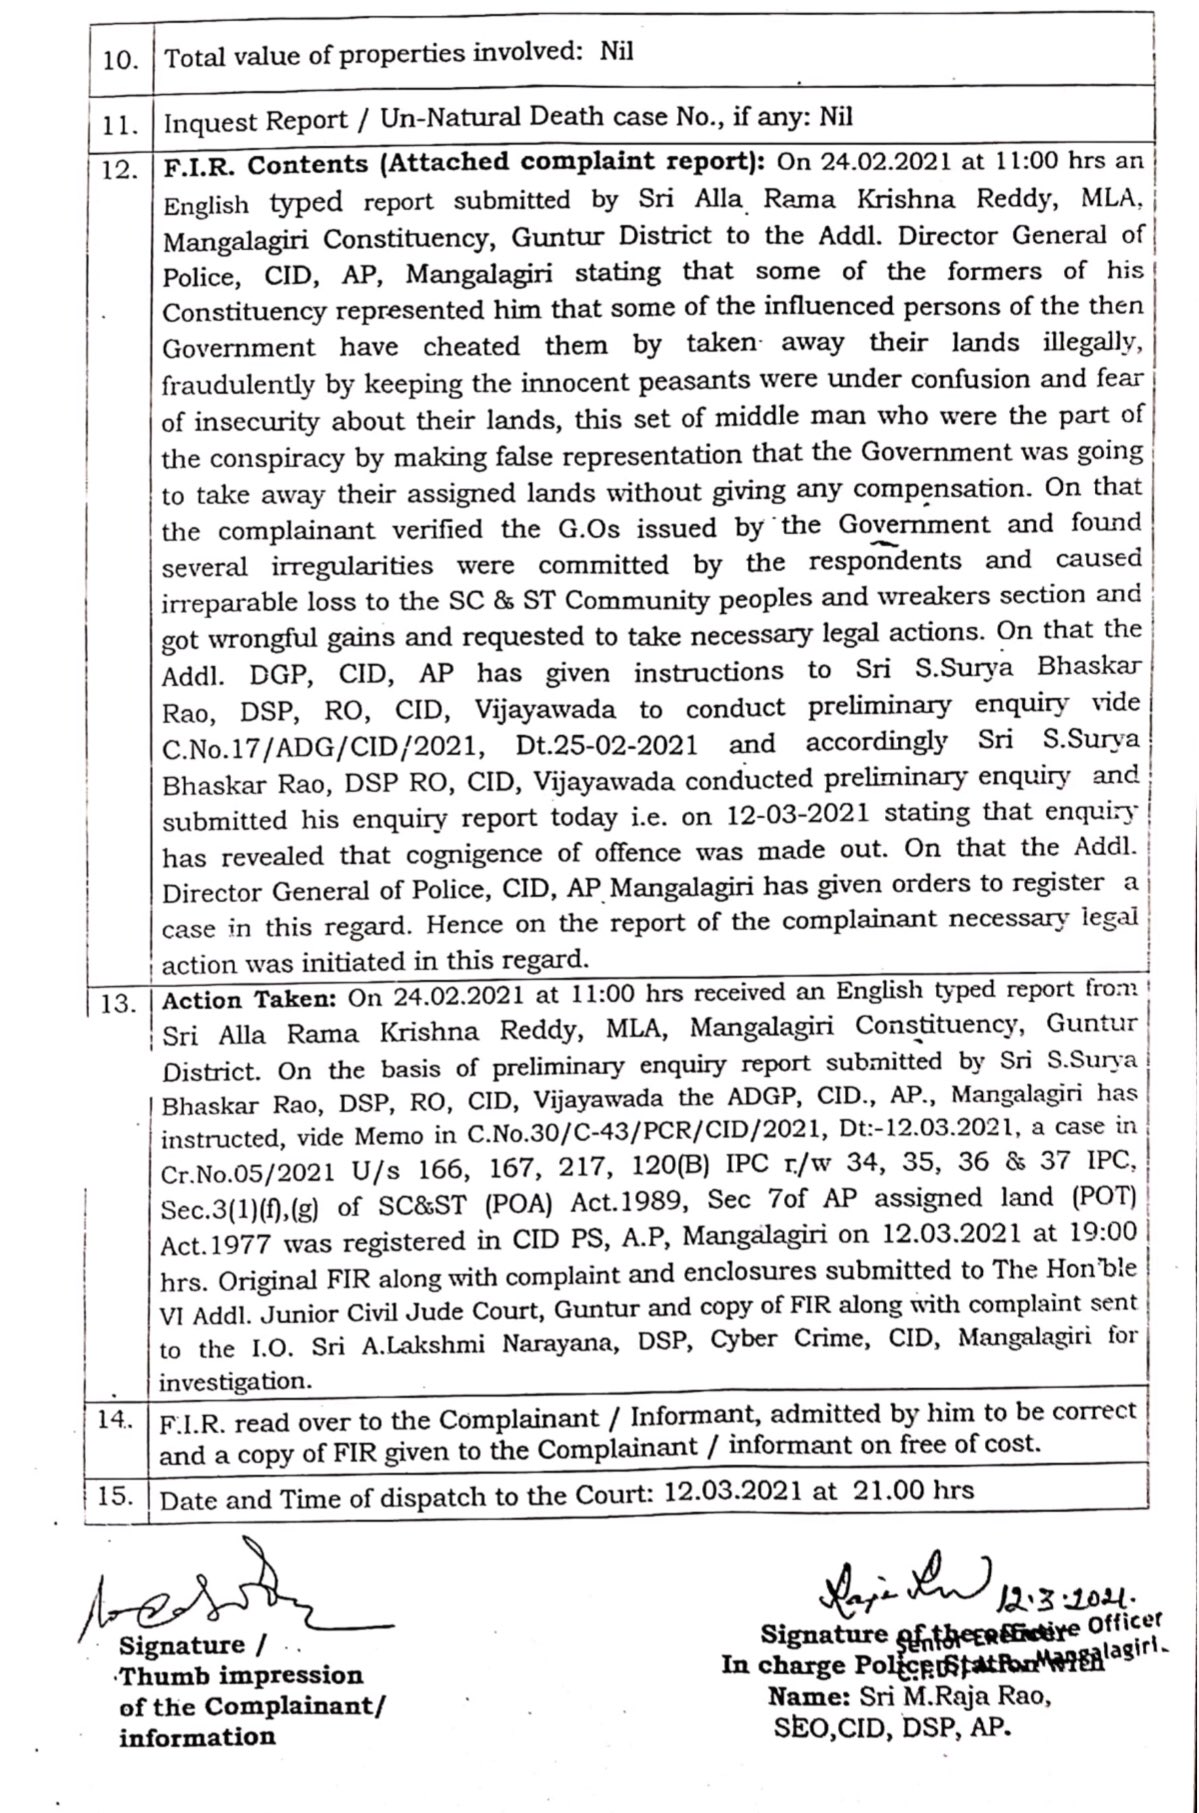 Cid Sent Notices To Chandrababu Regarding The Amaravati Land Scam!!